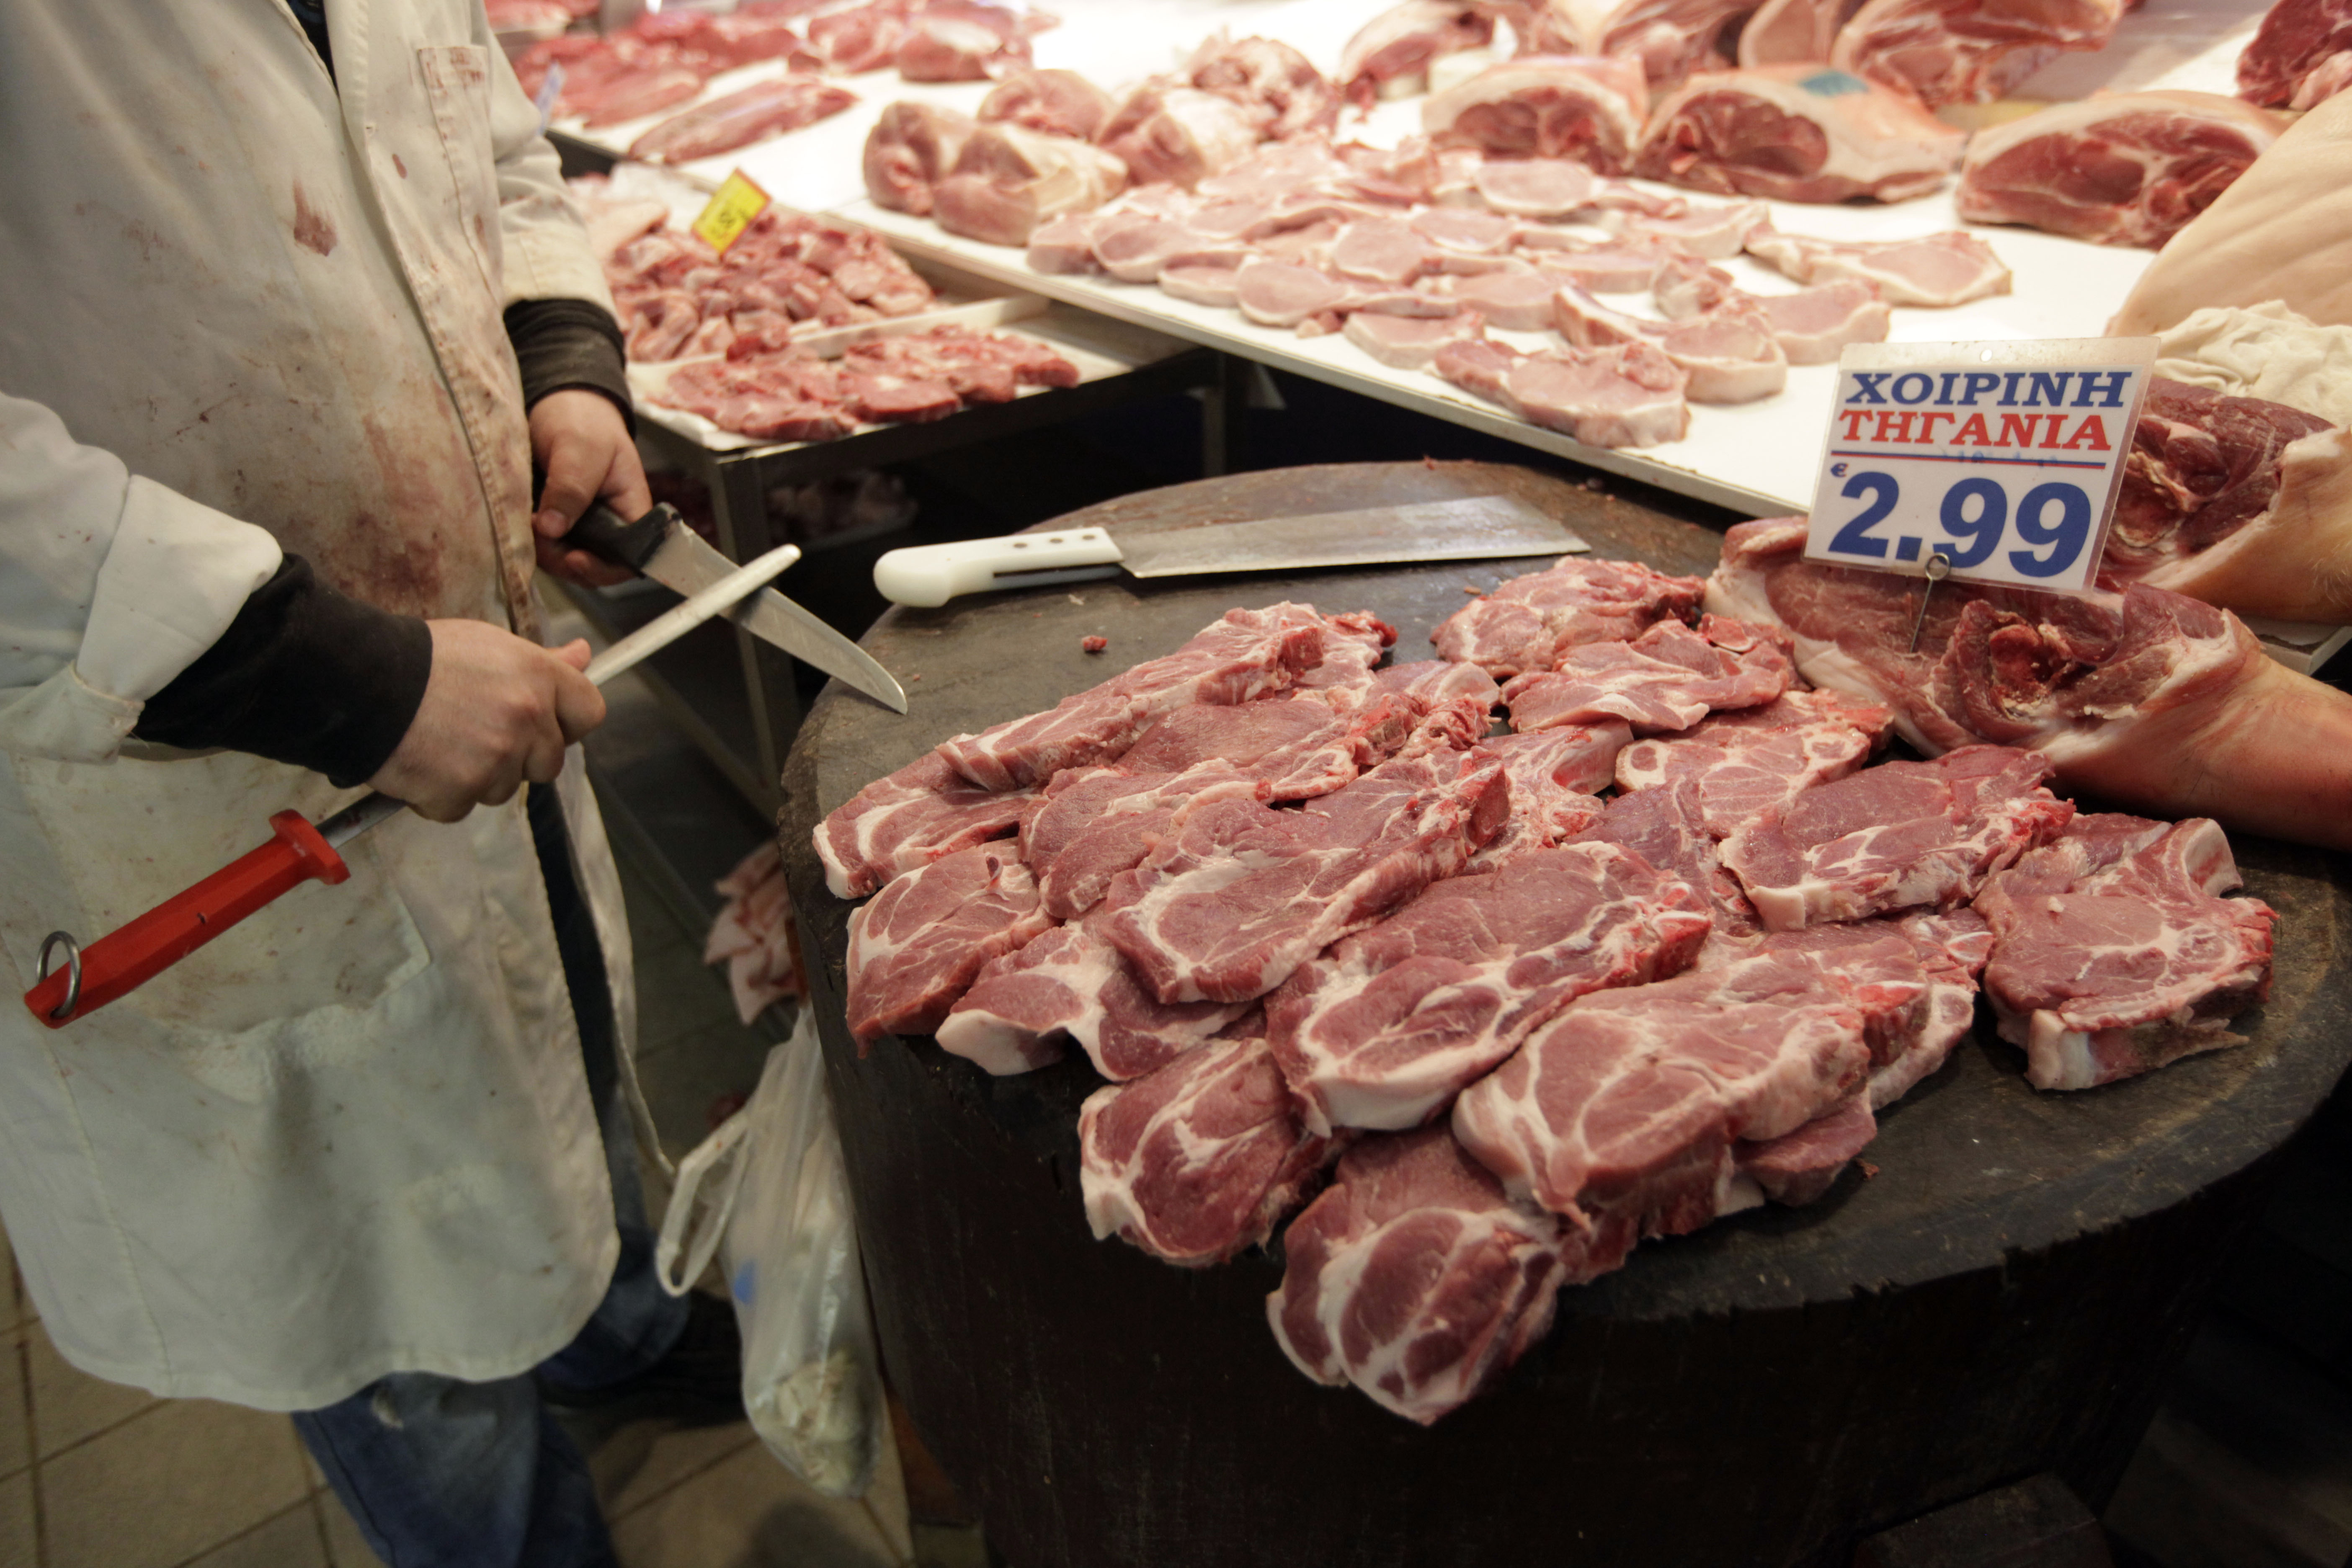 Πιθανό κρούσμα άνθρακα από βόειο κρέας στην Ουγγαρία